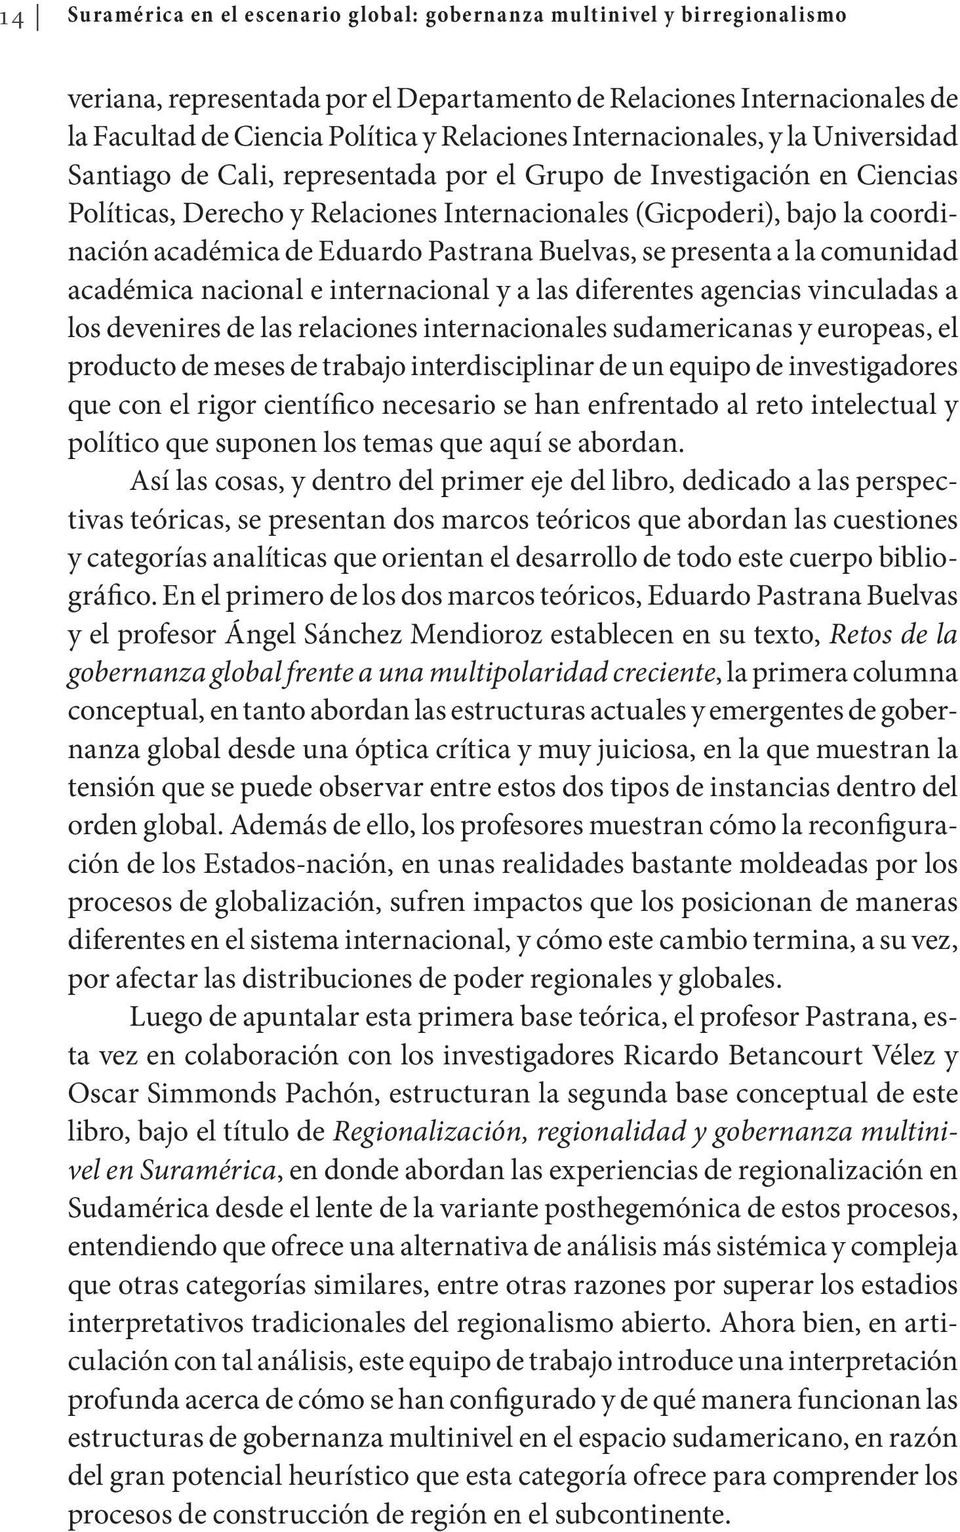 de Eduardo Pastrana Buelvas, se presenta a la comunidad académica nacional e internacional y a las diferentes agencias vinculadas a los devenires de las relaciones internacionales sudamericanas y